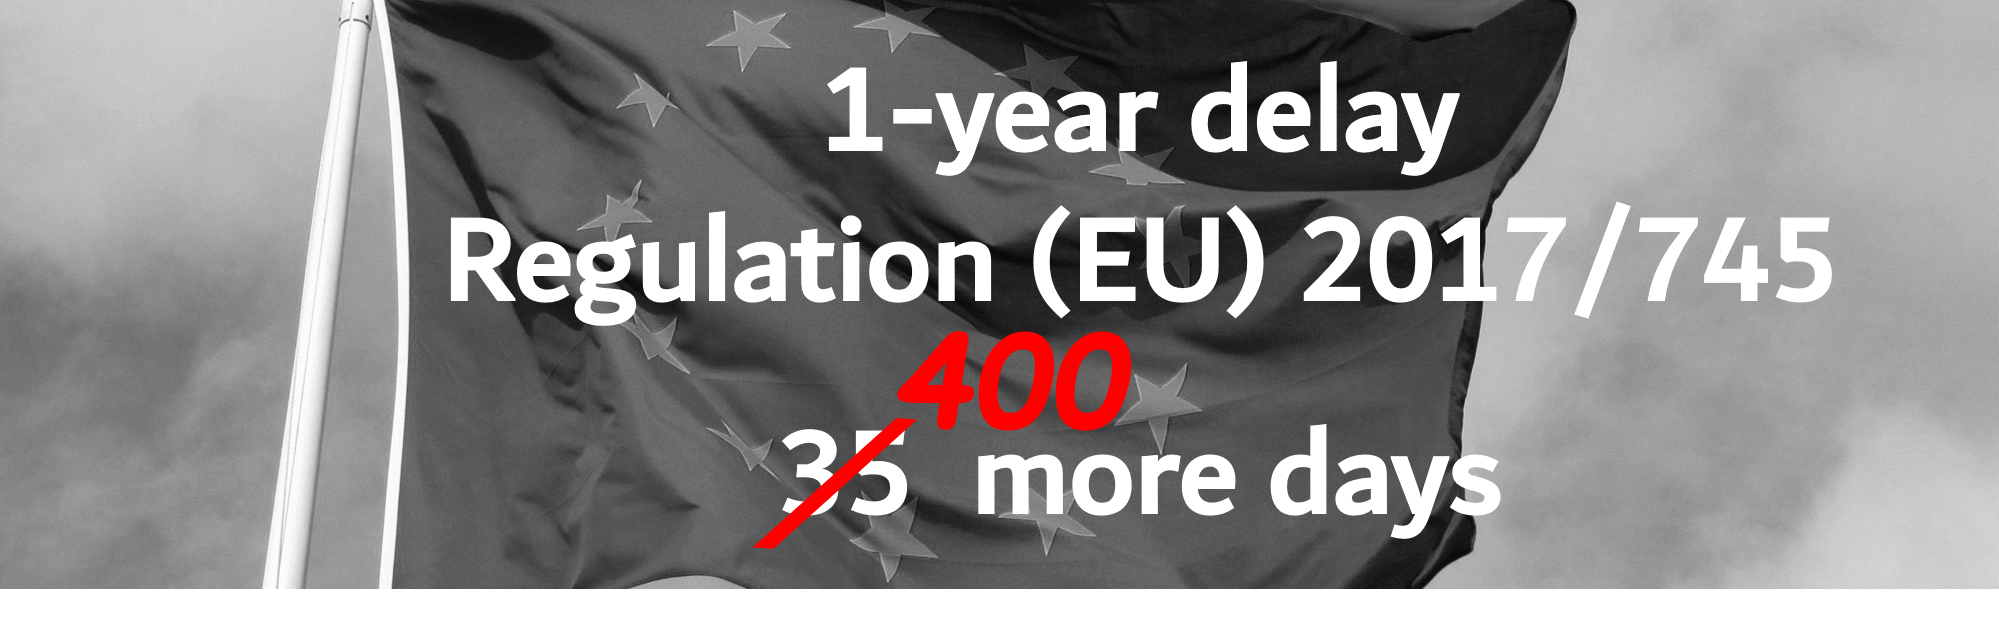 EU Regulation 1 year delay 1 EU MDR delay   a huge miss